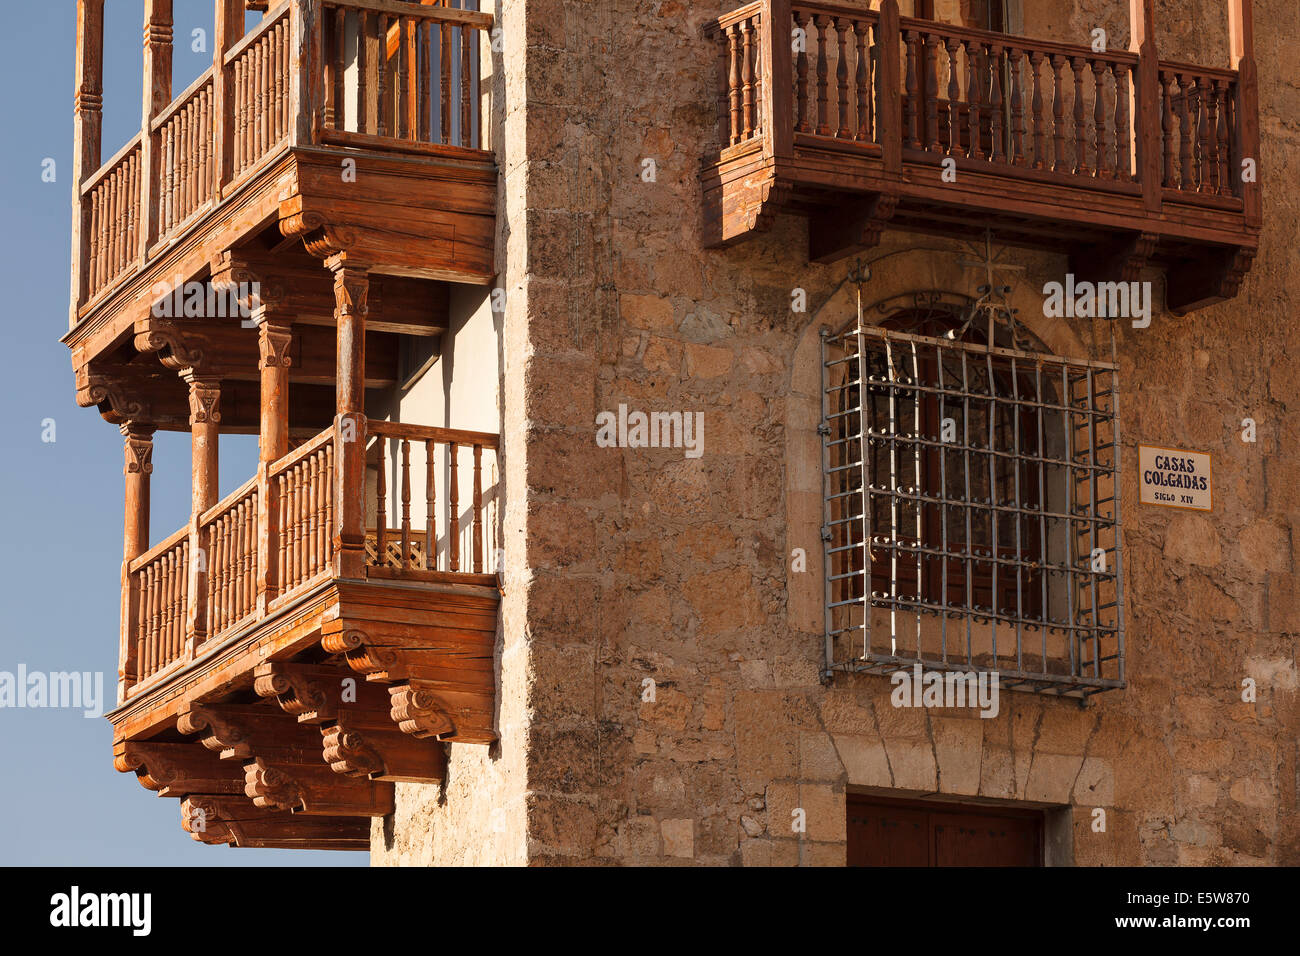 Dettaglio di case sospese. La città di Cuenca. Castilla La Mancha. Spagna. Europa Foto Stock